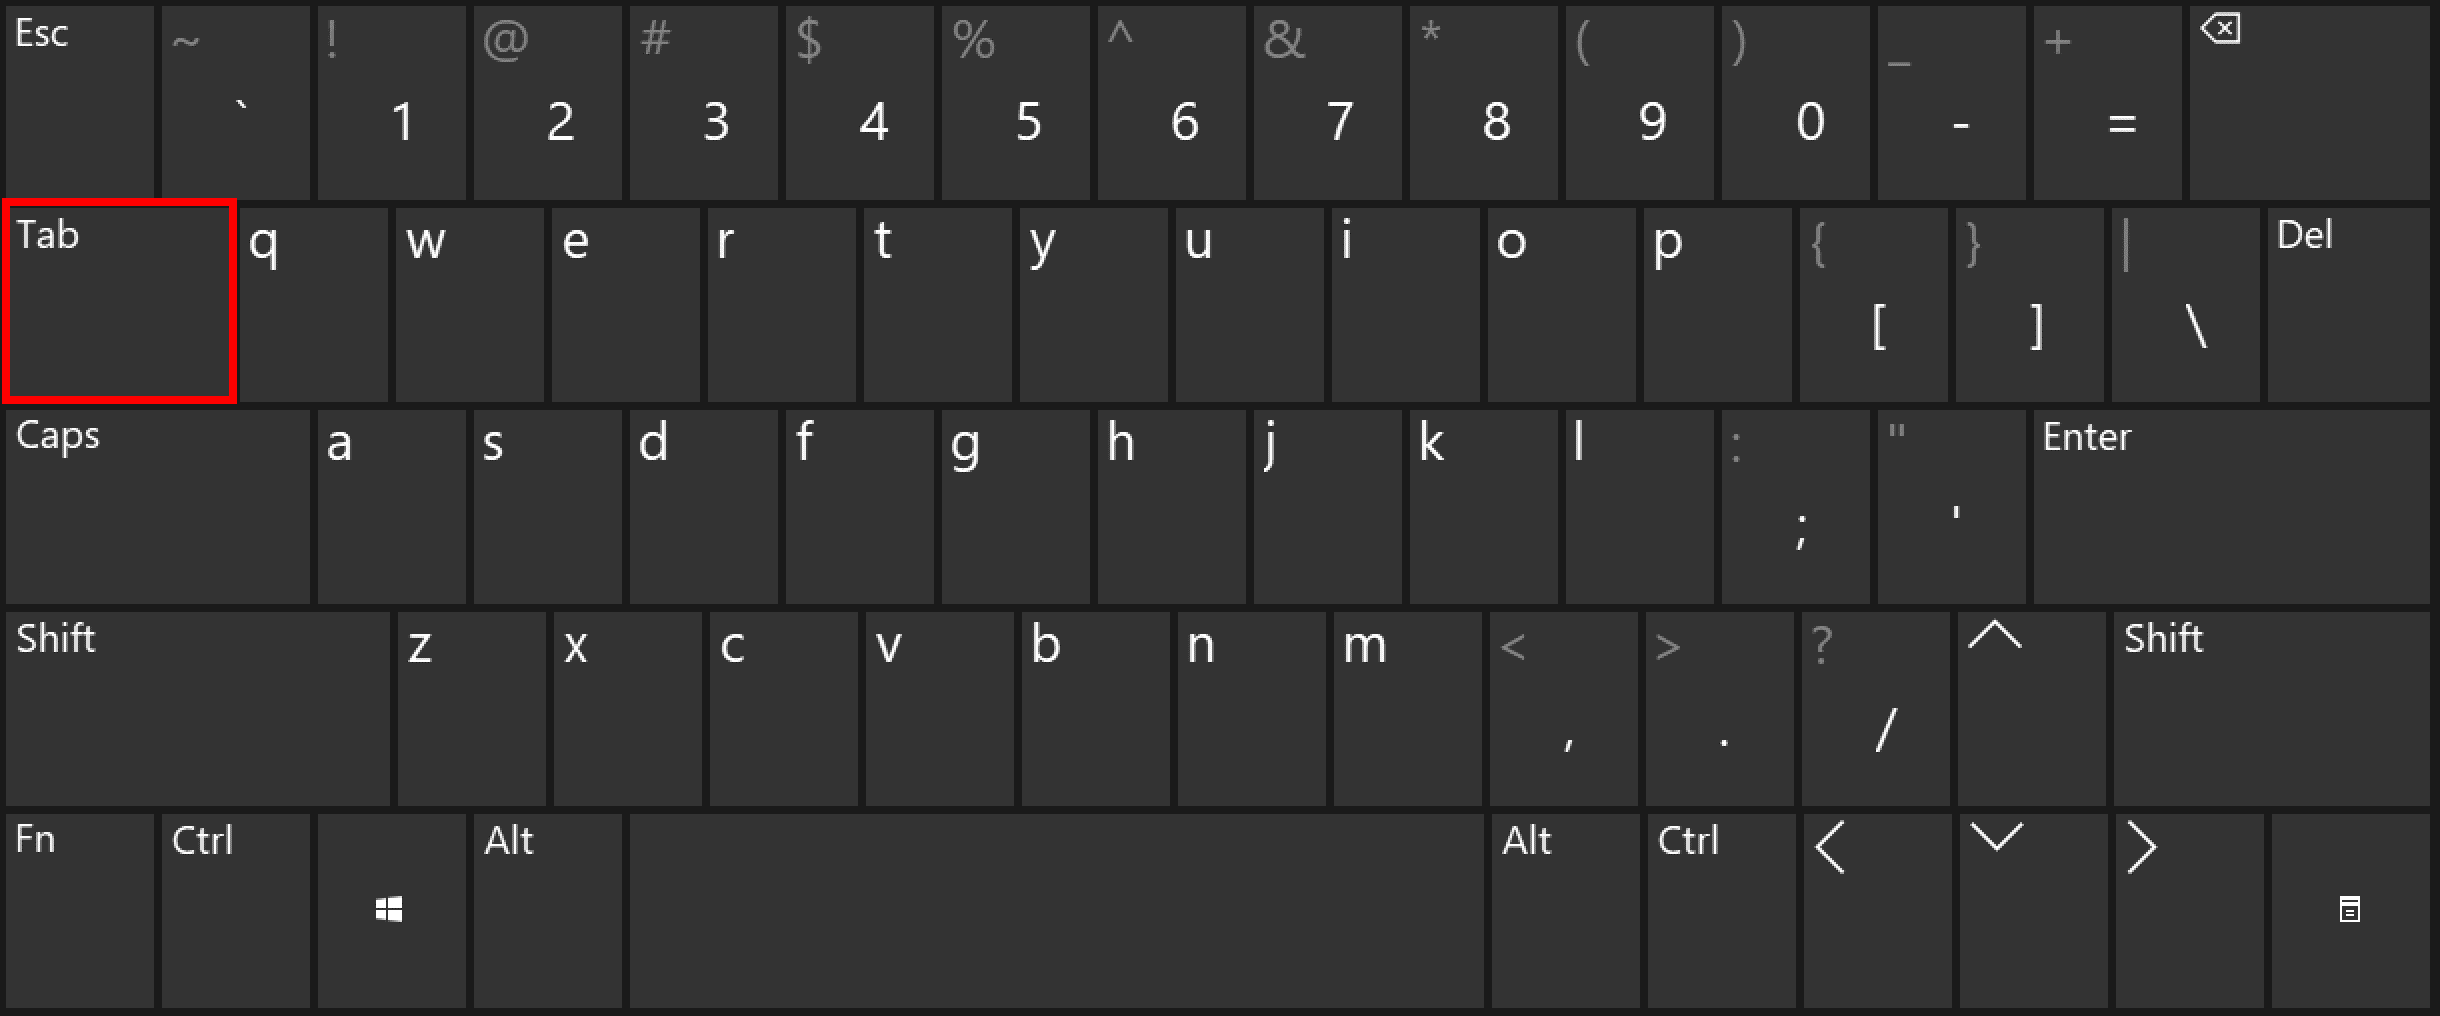 The tab key on a keyboard